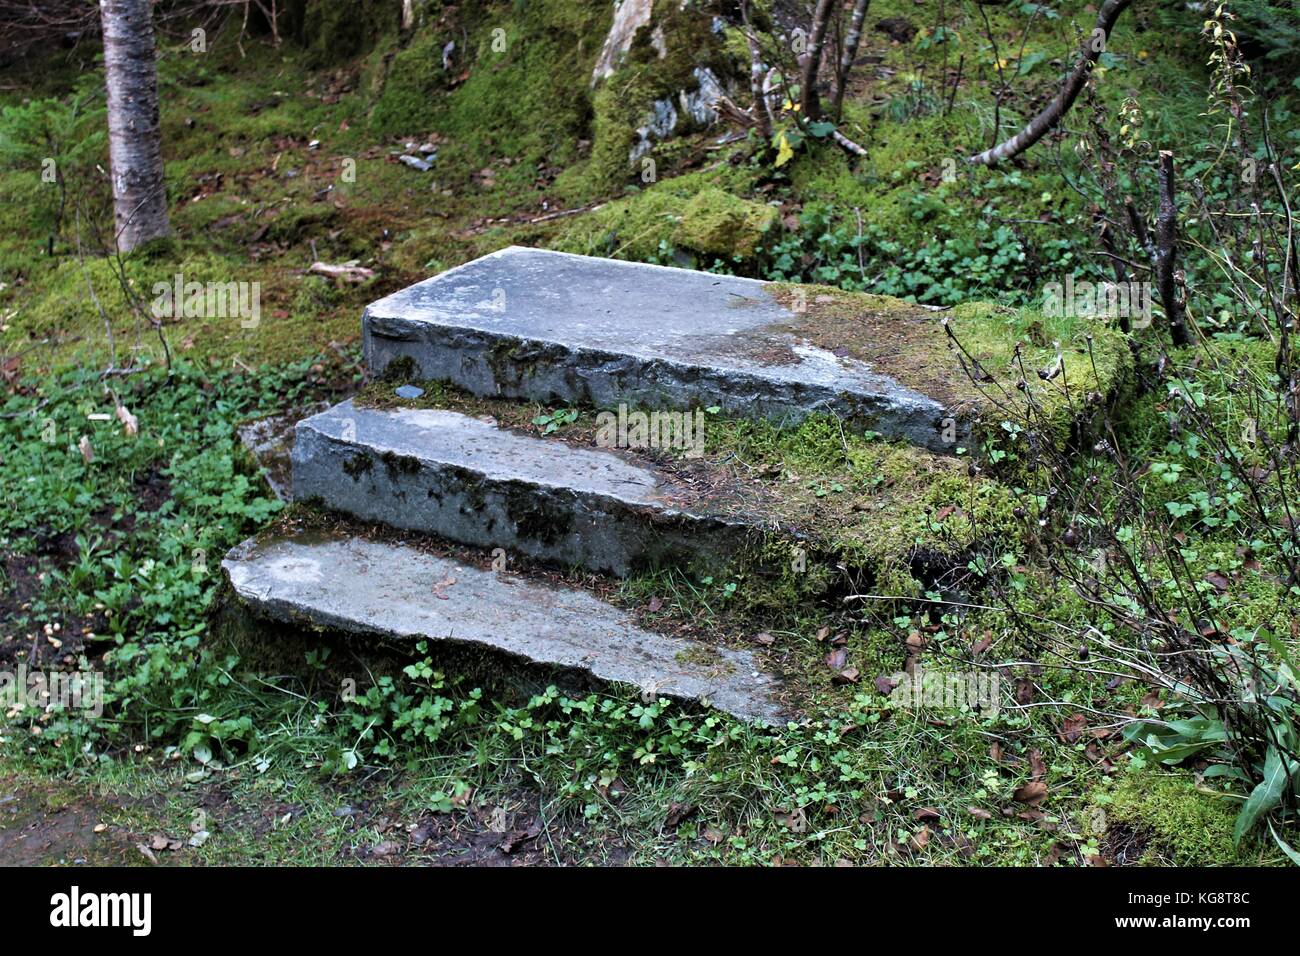 Una scala di pietra nella foresta è tutto ciò che resta di una casa che aveva una volta sorgeva in quella posizione, nell'Insediamento abbandonato della Manche, NL. Foto Stock